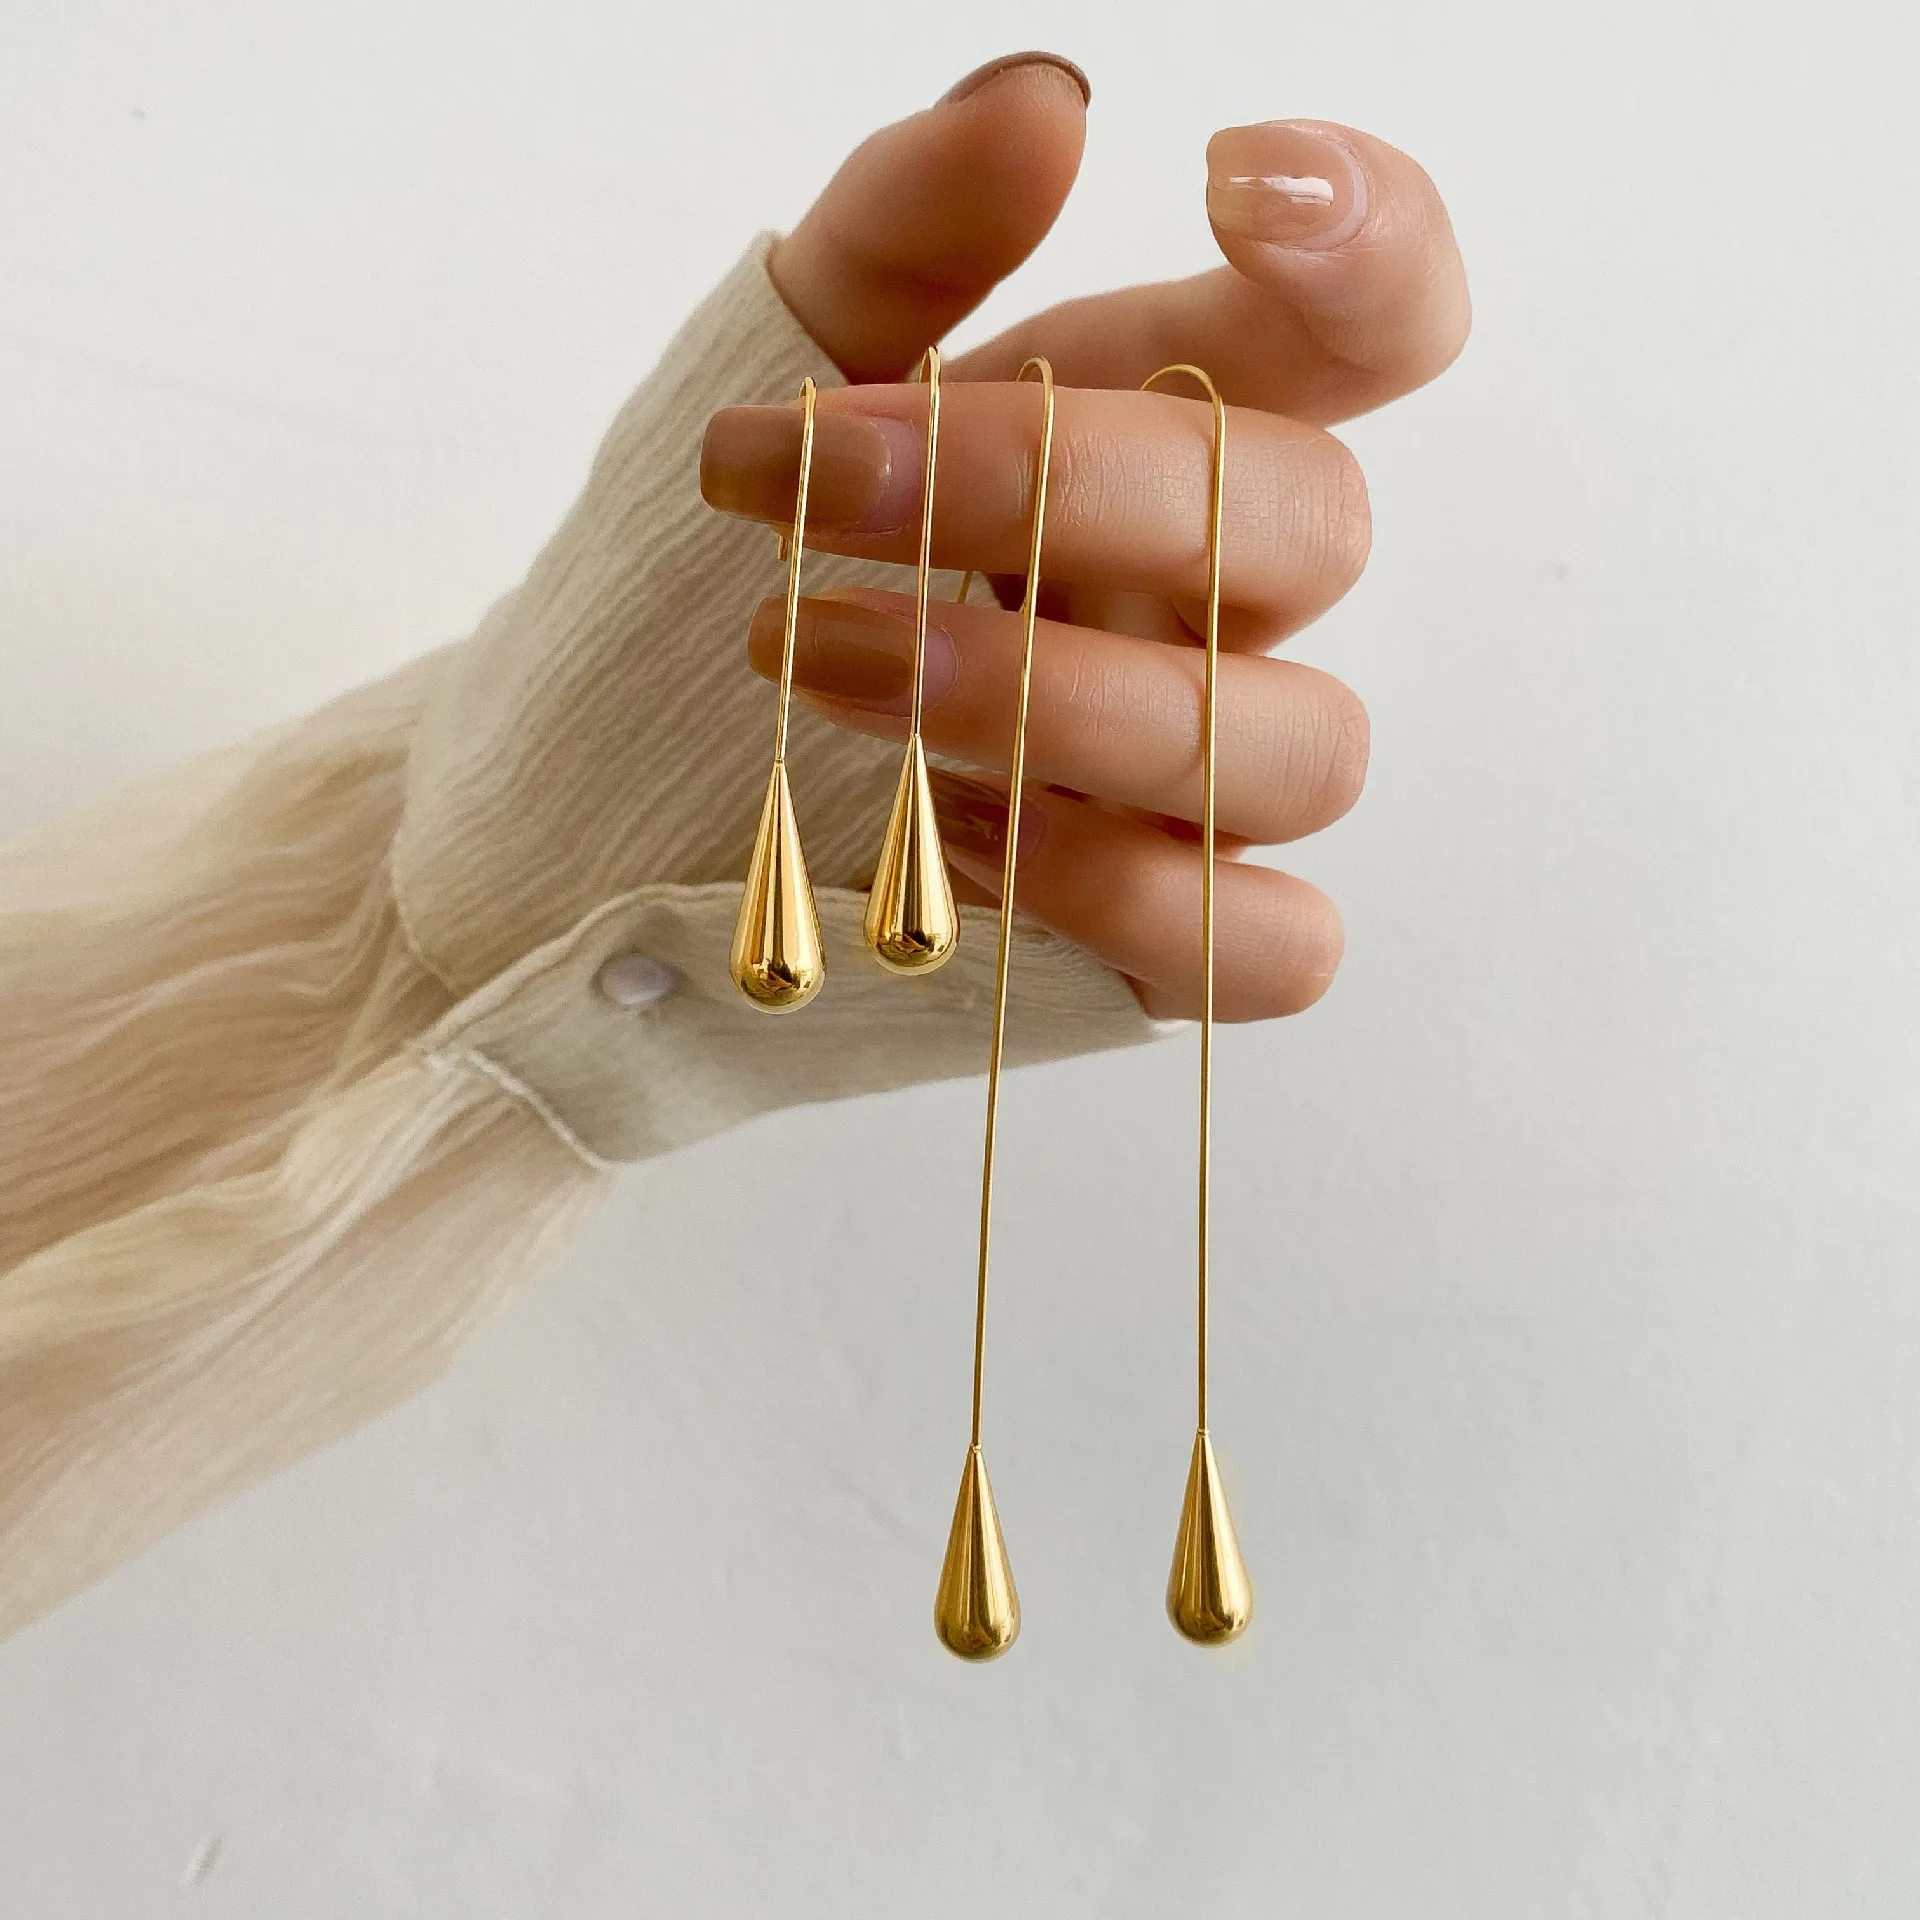 

French Style Stainless Steel Long Stick Waterdrop Hook Earring Ladies Fashion 18k Gold Filled 10mm Long Teardrop Dangle Earring